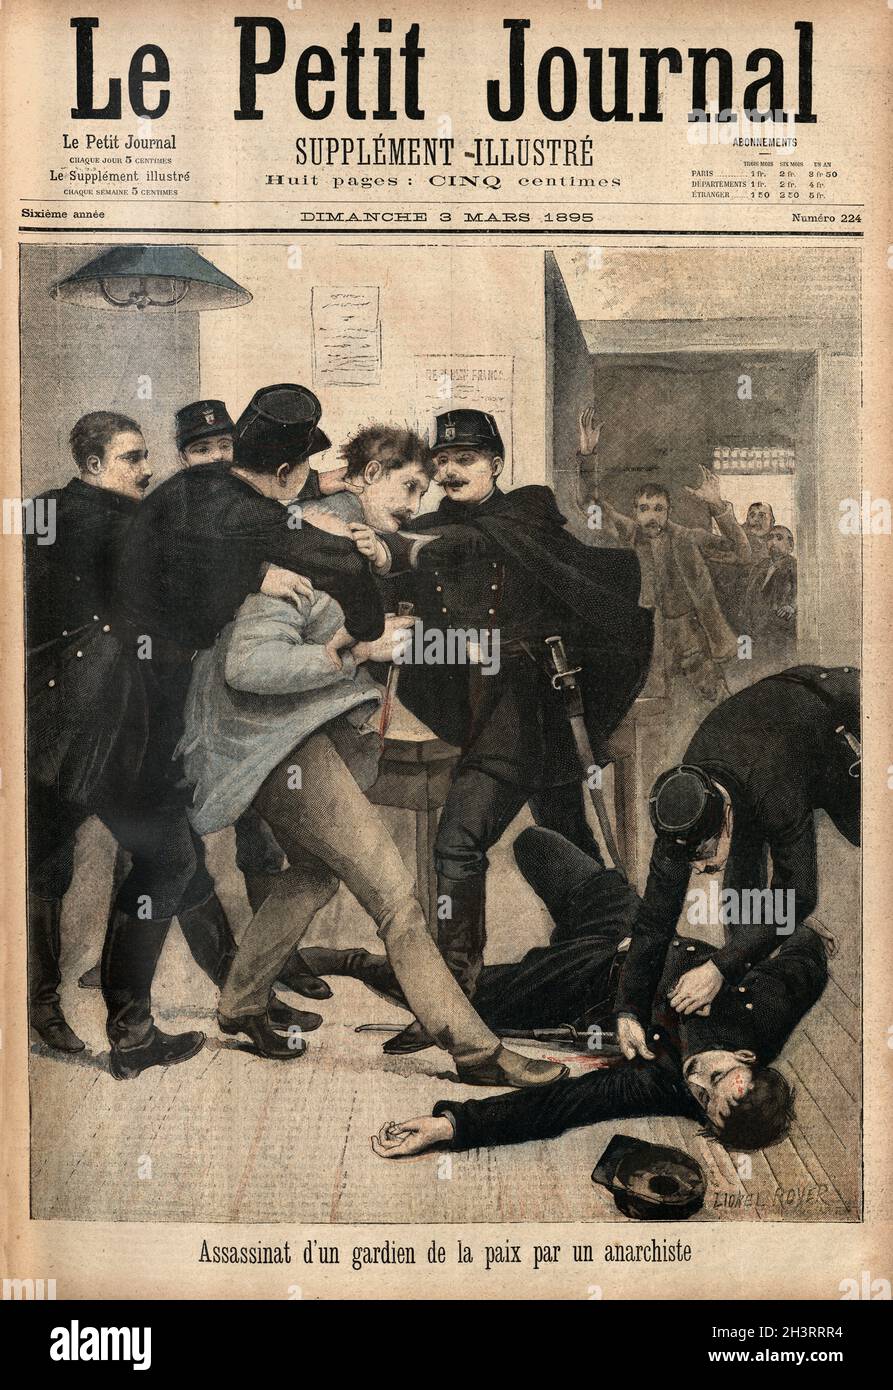 Assassinat d'un gardien de la paix par un anarchiste, Assassination of a police officer by an anarchist. Le Petit Journal, 1895 Stock Photo